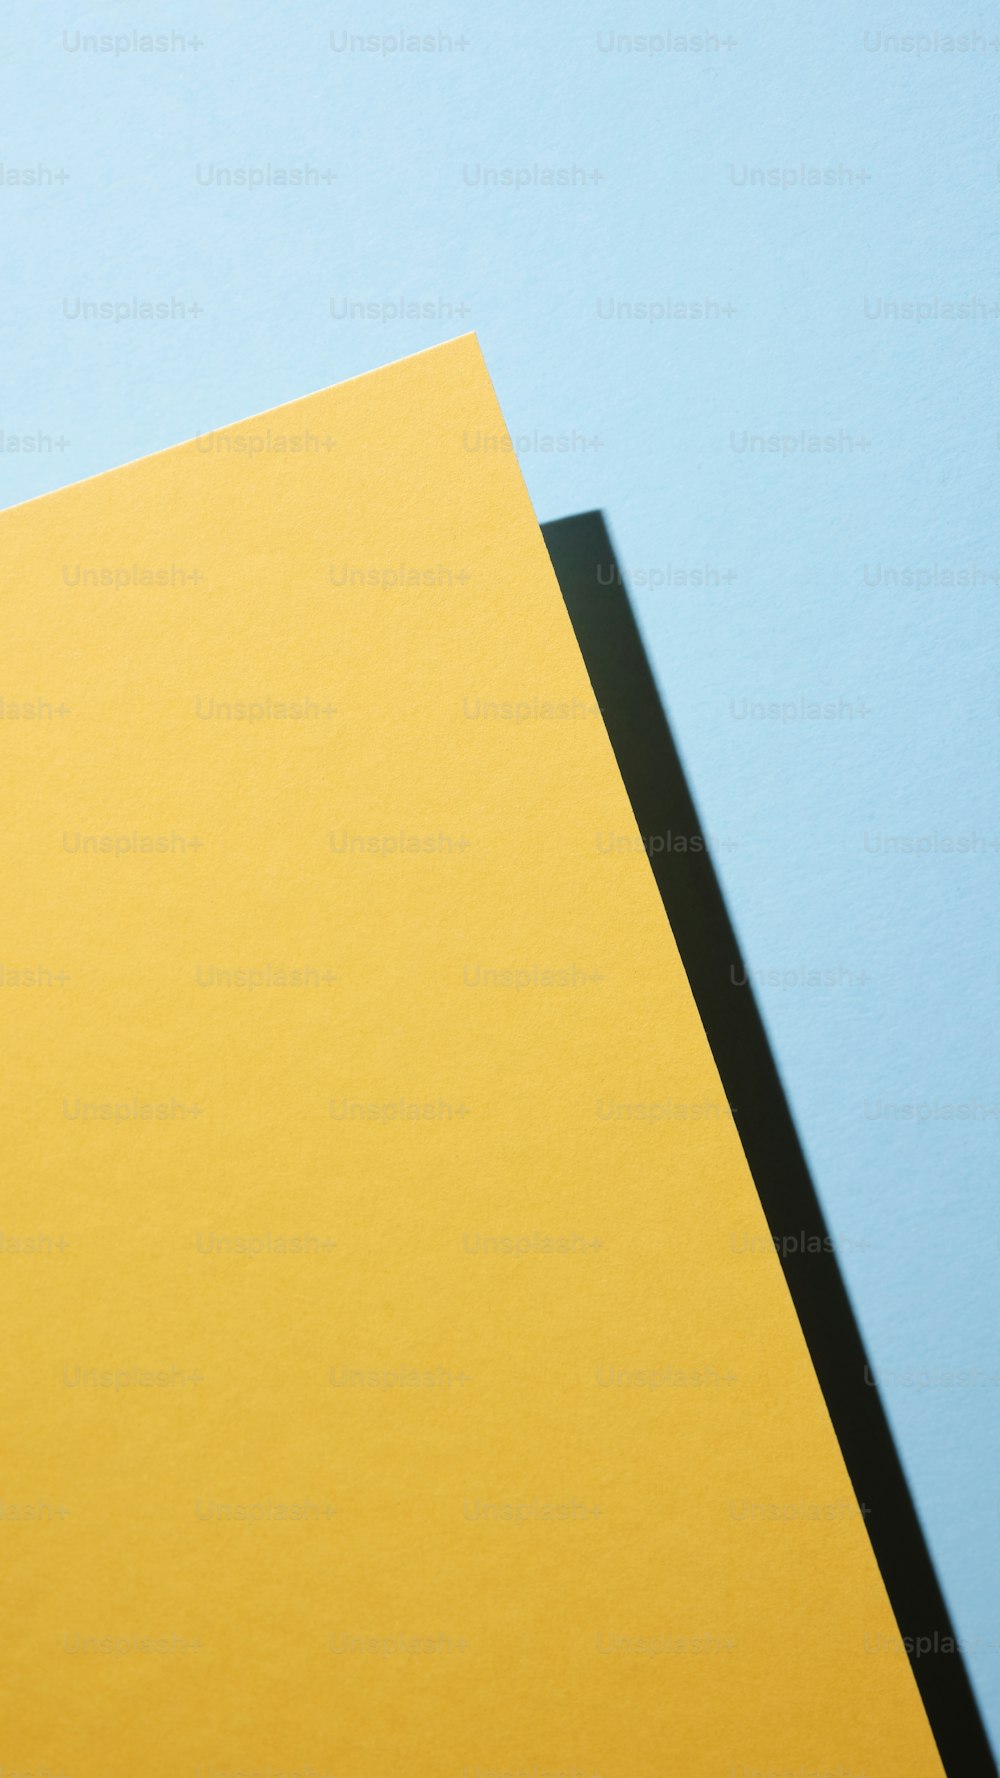 Un pedazo de papel amarillo sobre un fondo azul